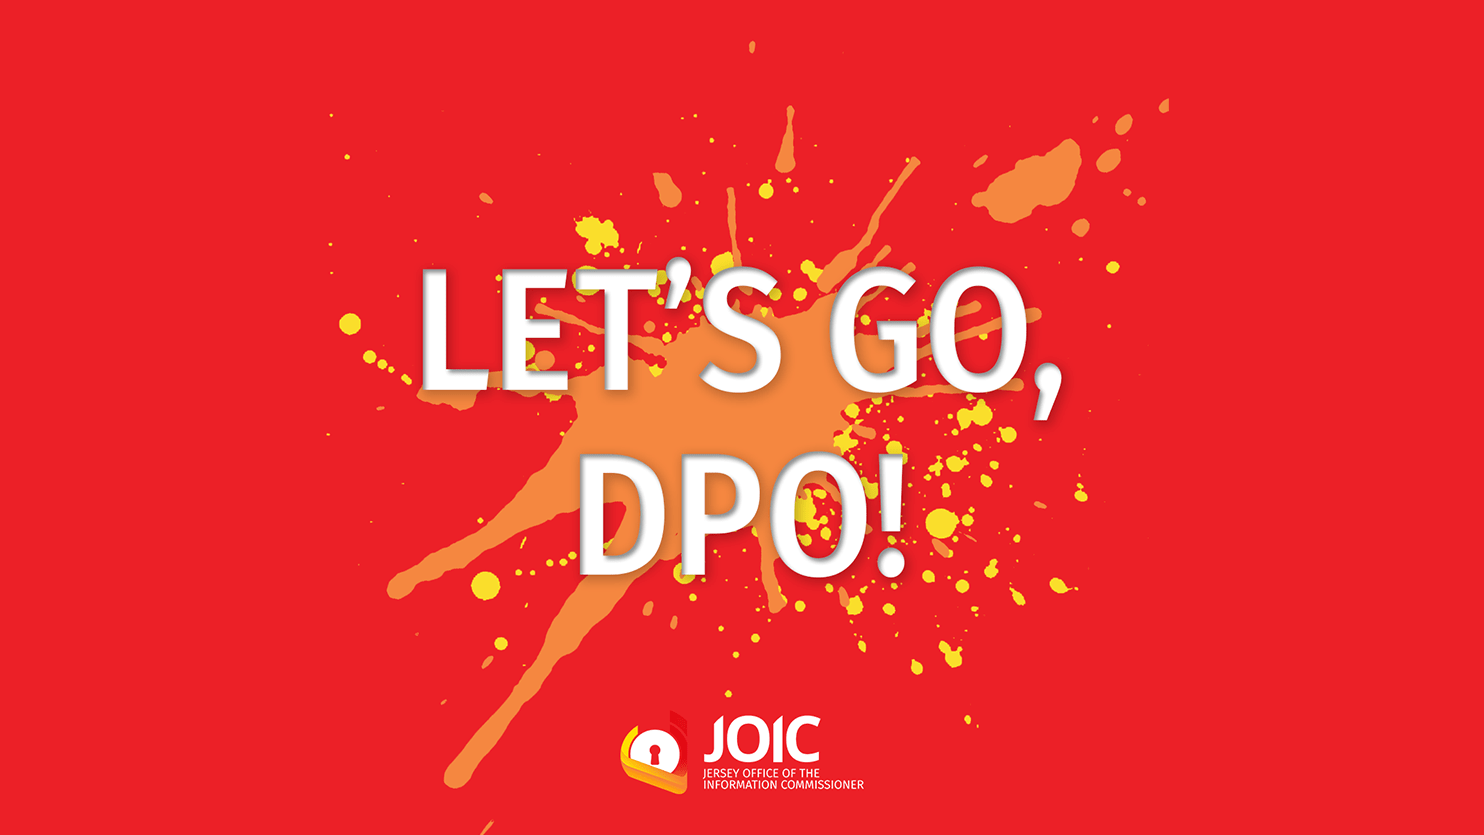 JOIC Lets go DPO event